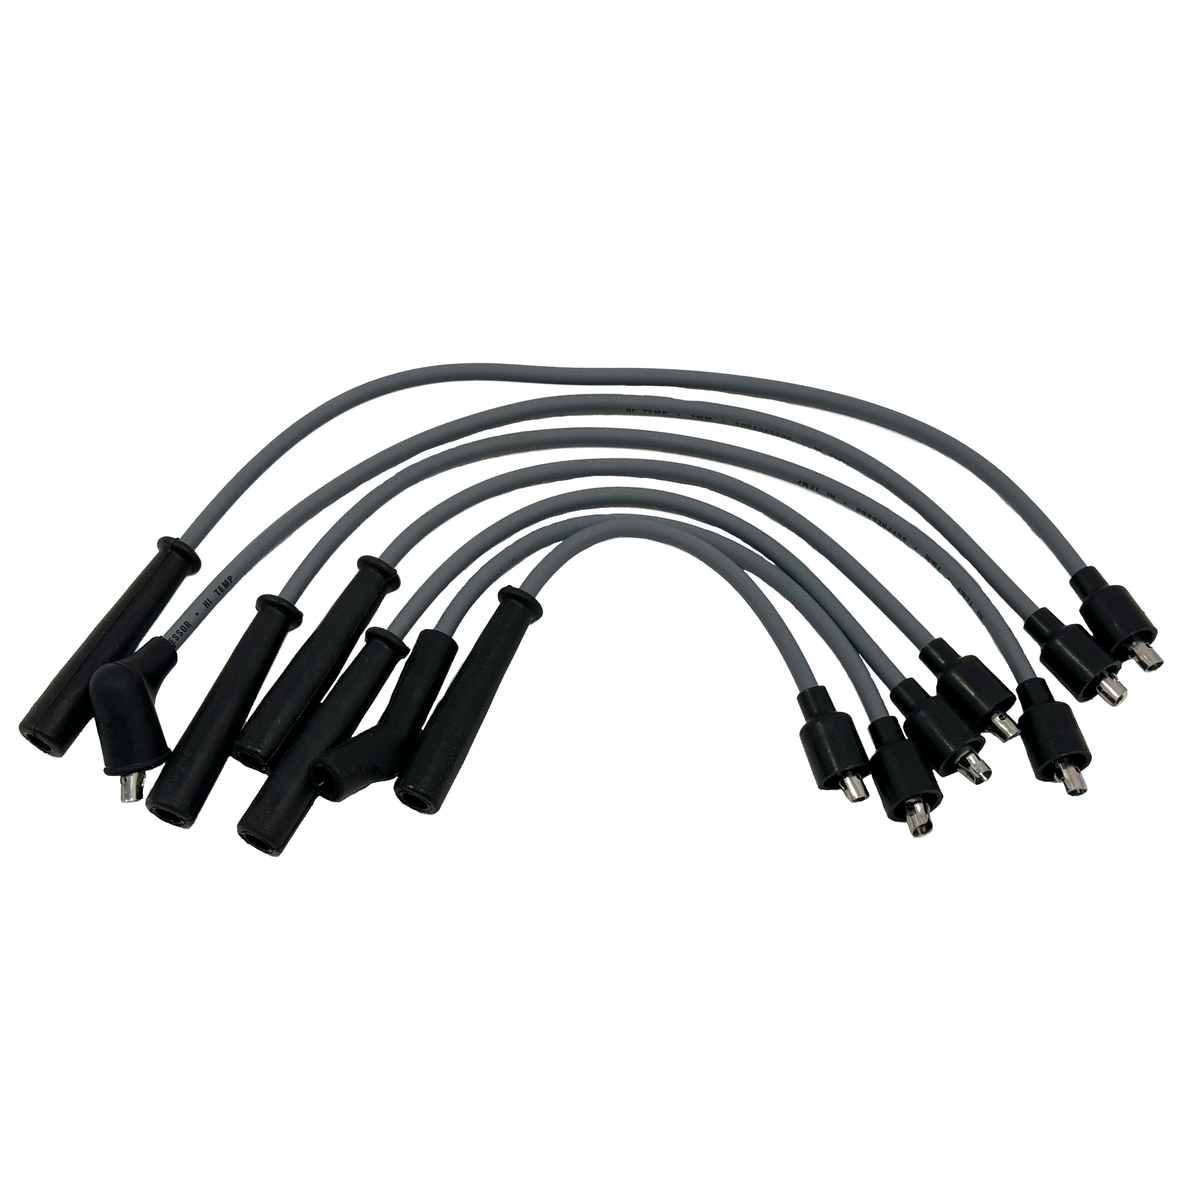 Spark Plug Wire Set - Reproduction - FJ62 1988-1990